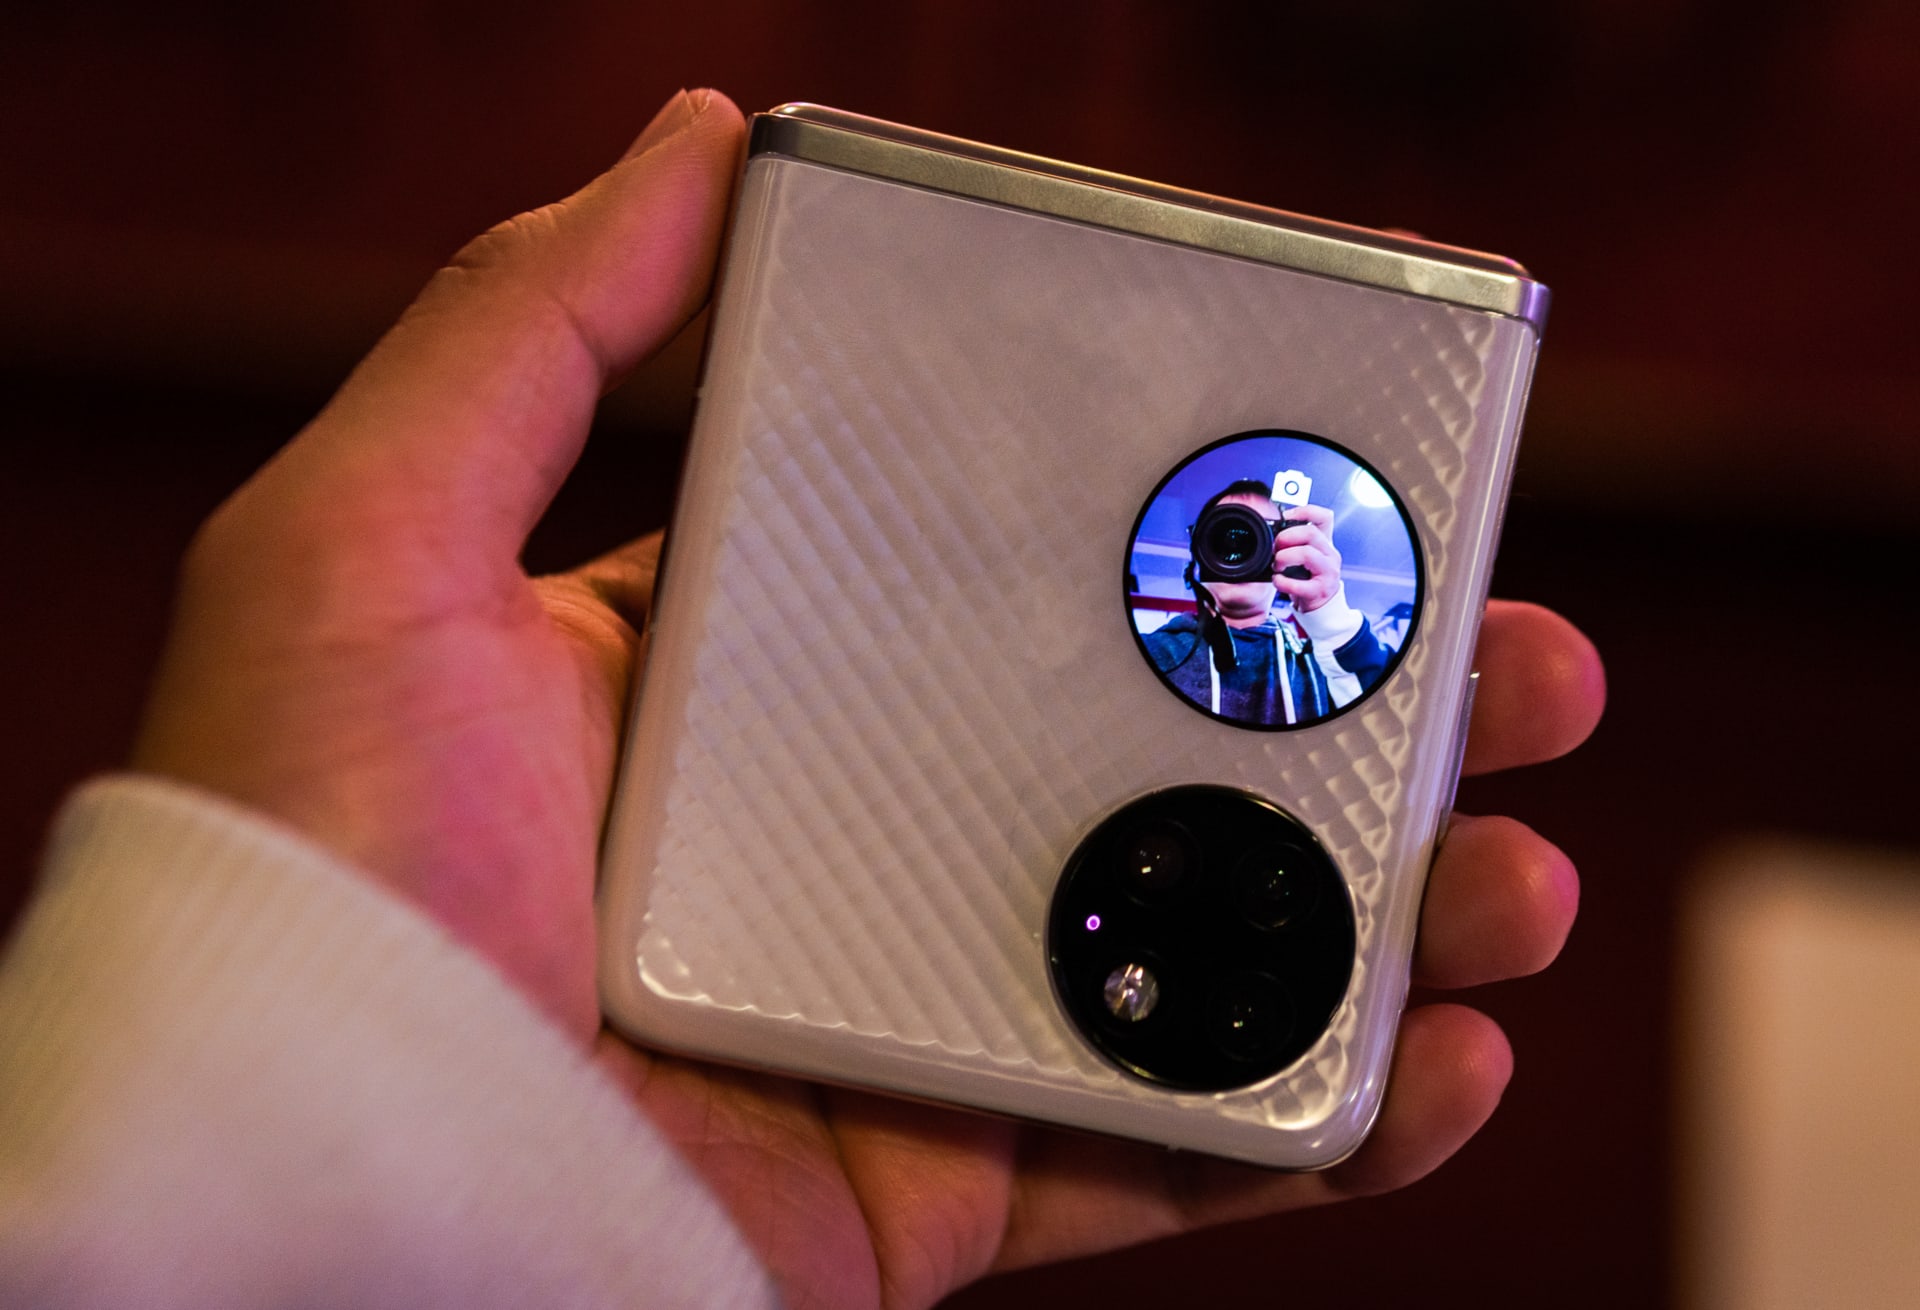 Focení selfie snímků zadním fotoaparátem? Huawei P50 Pocket to umí právě díky zadnímu displeji.